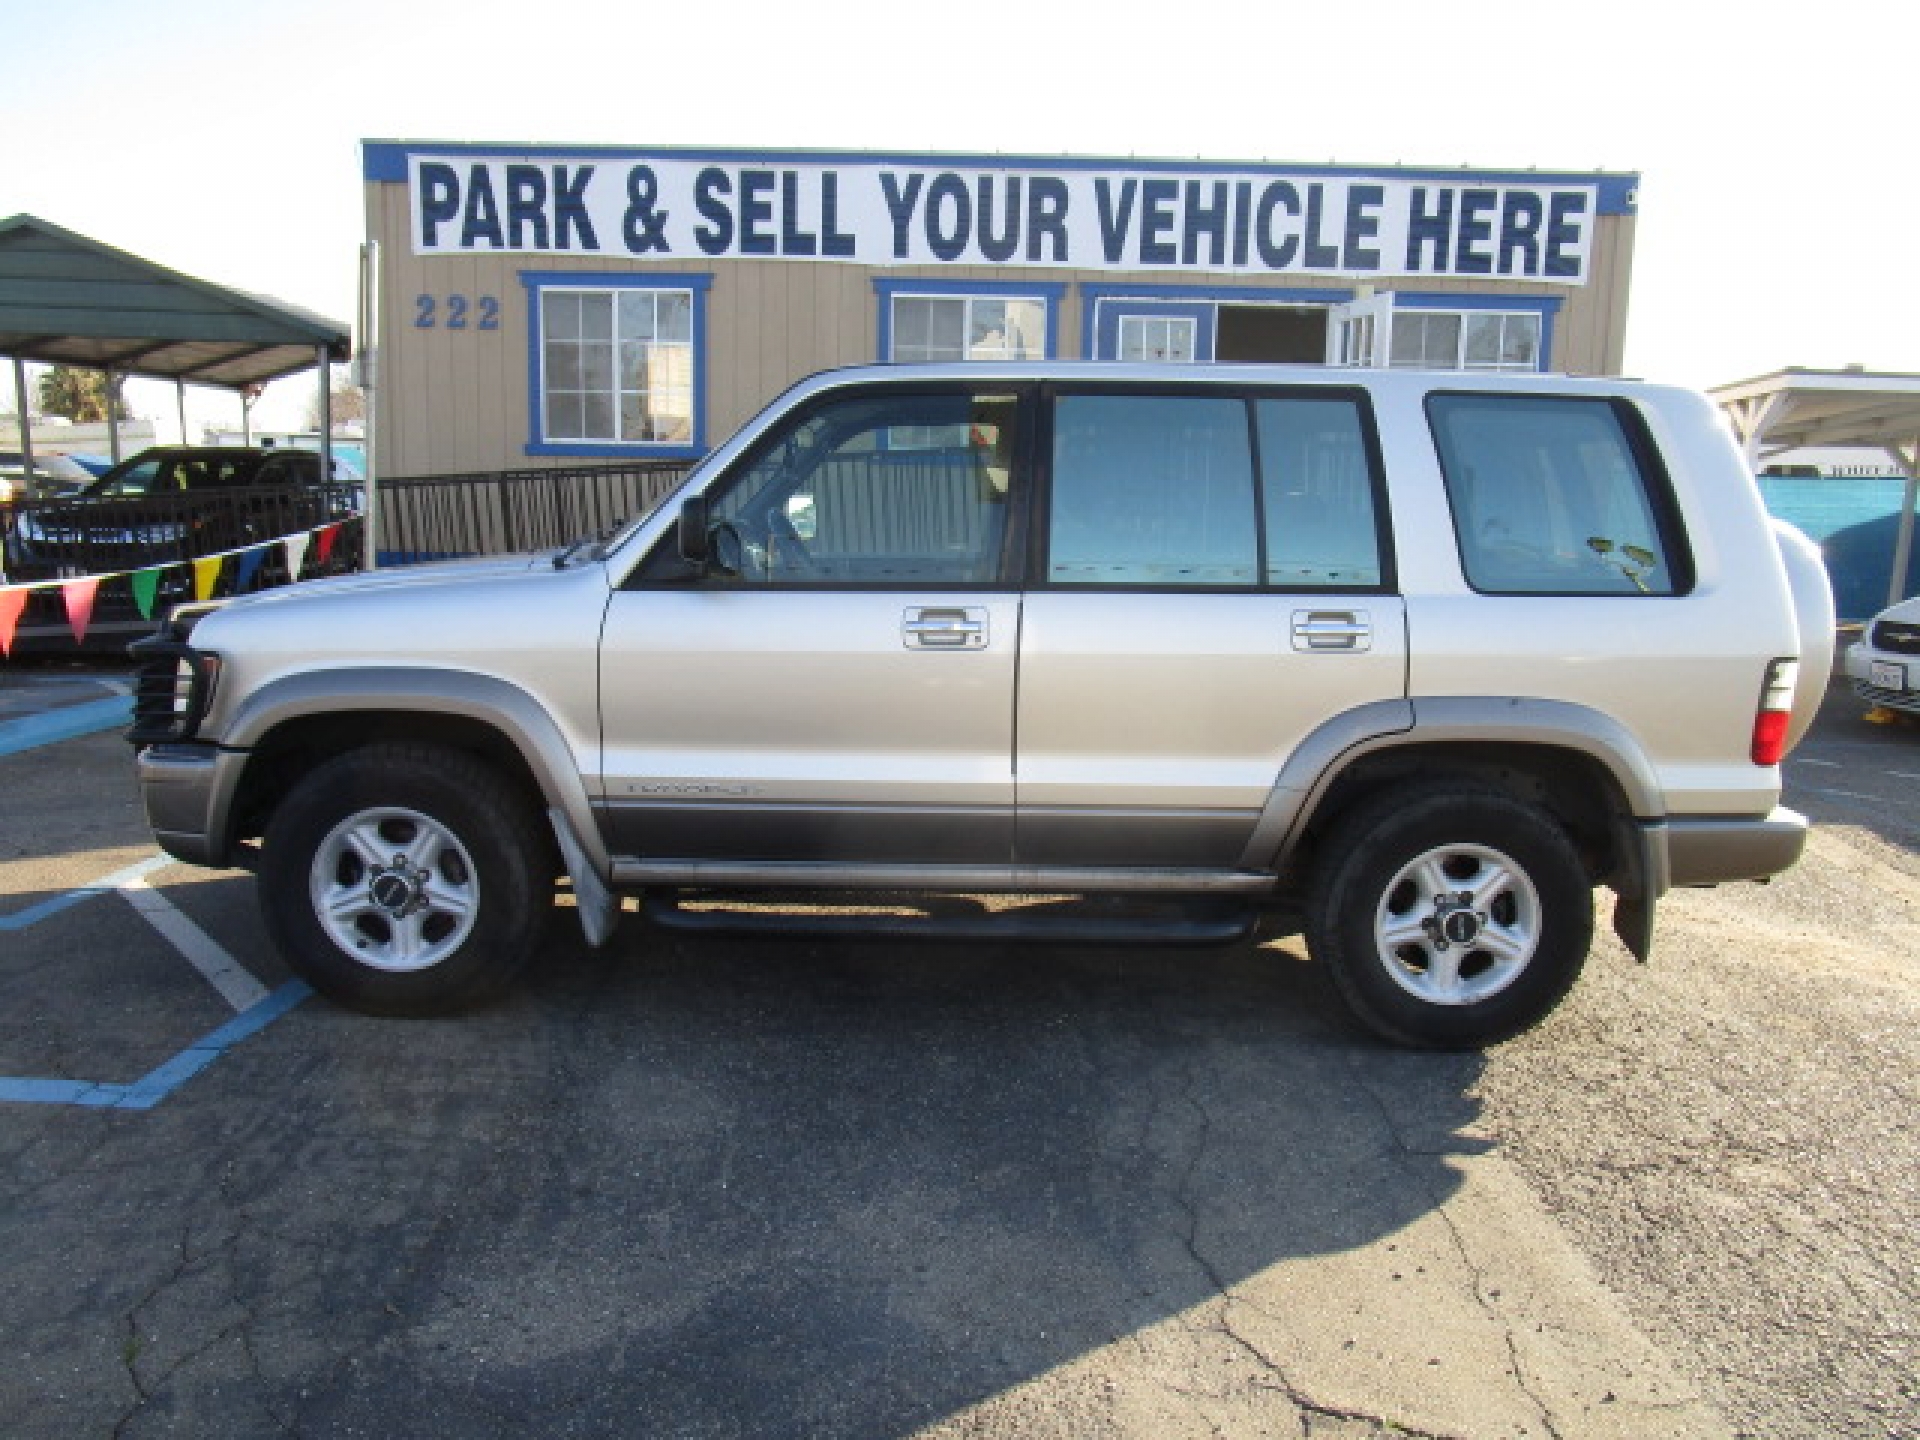 SUV for sale: 2000 Isuzu Trooper Limited in Lodi Stockton CA - Lodi Park  and Sell